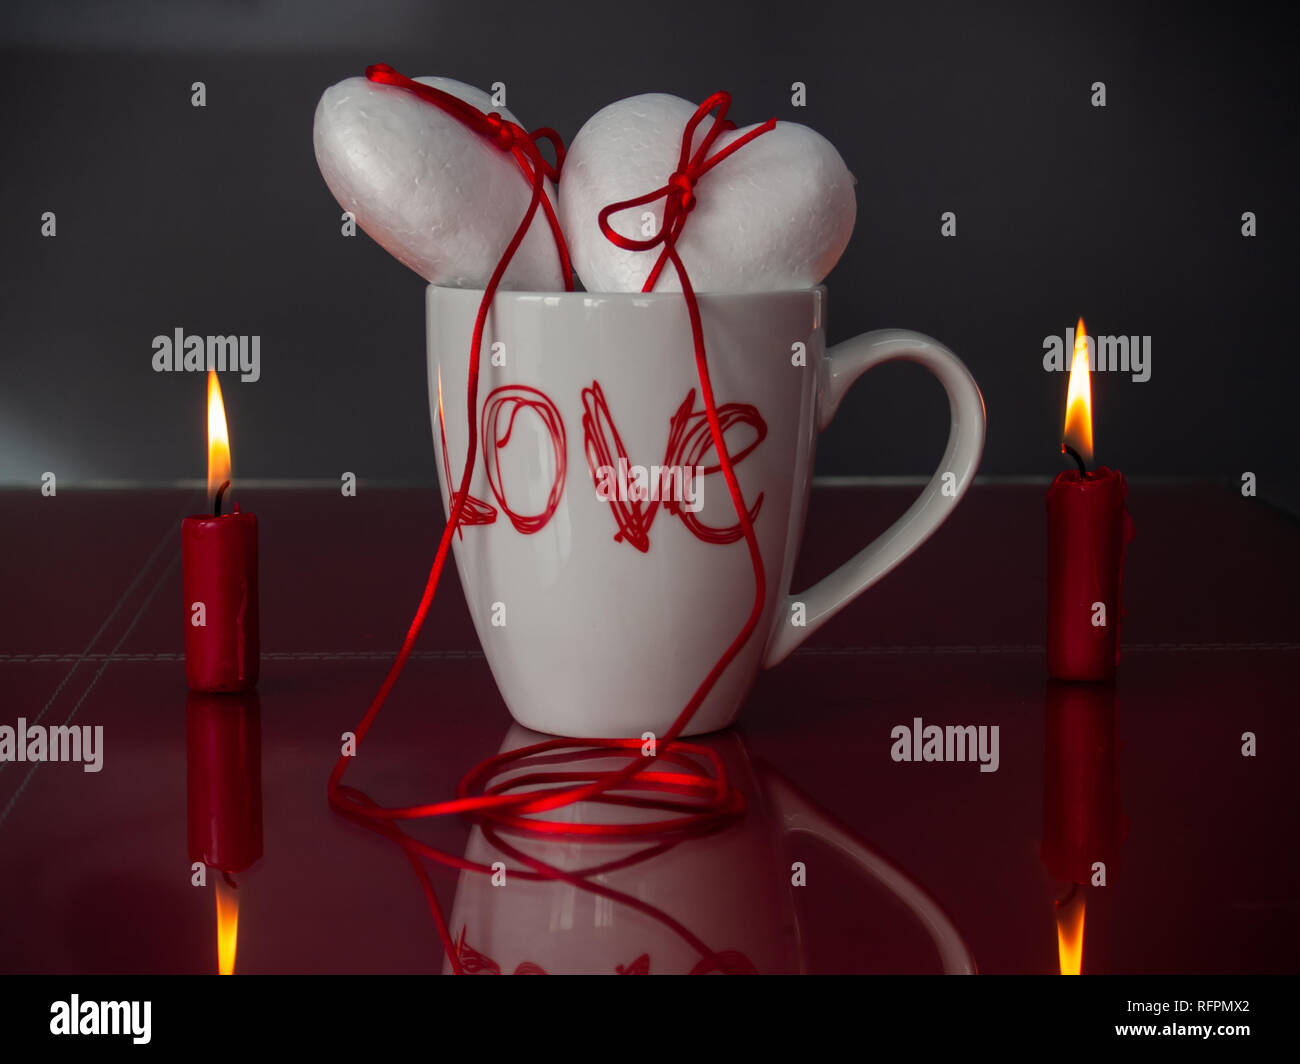 Concetto di amore poliespan due cuori uniti con un filo rosso che simboleggia la leggenda del filo rosso su una tazza colazione e due rosso acceso candele Foto Stock